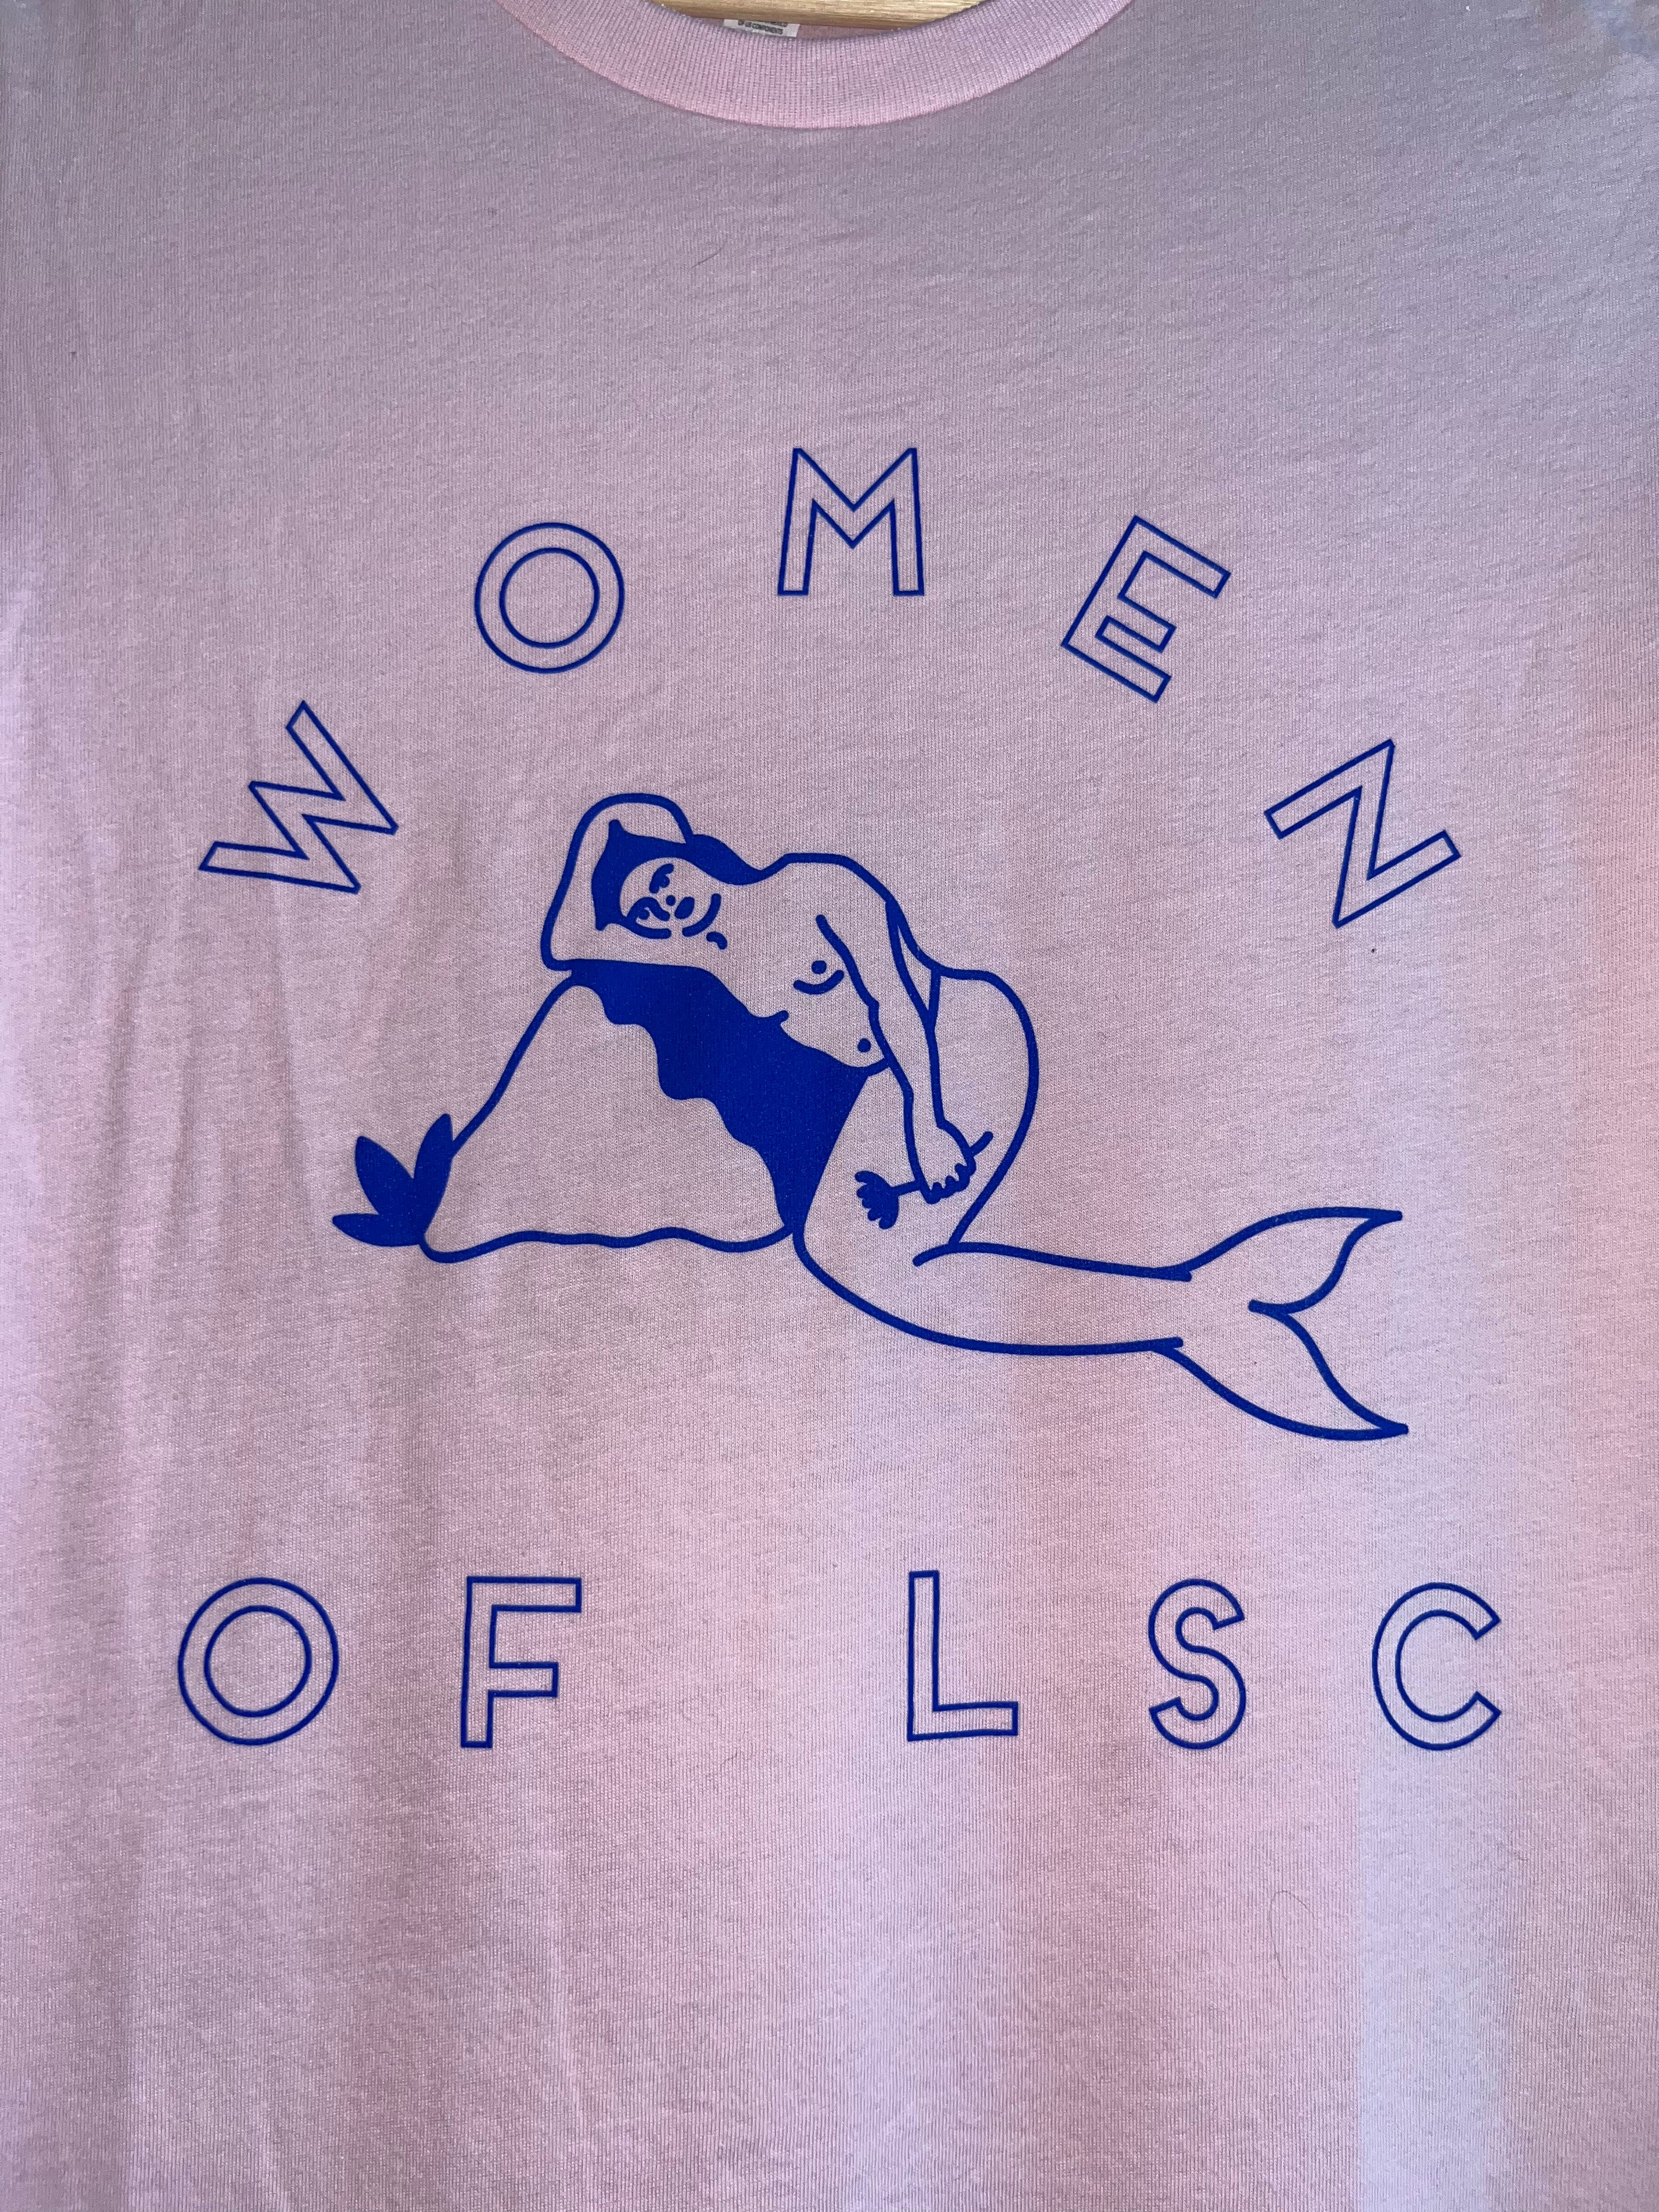 Women of LSC